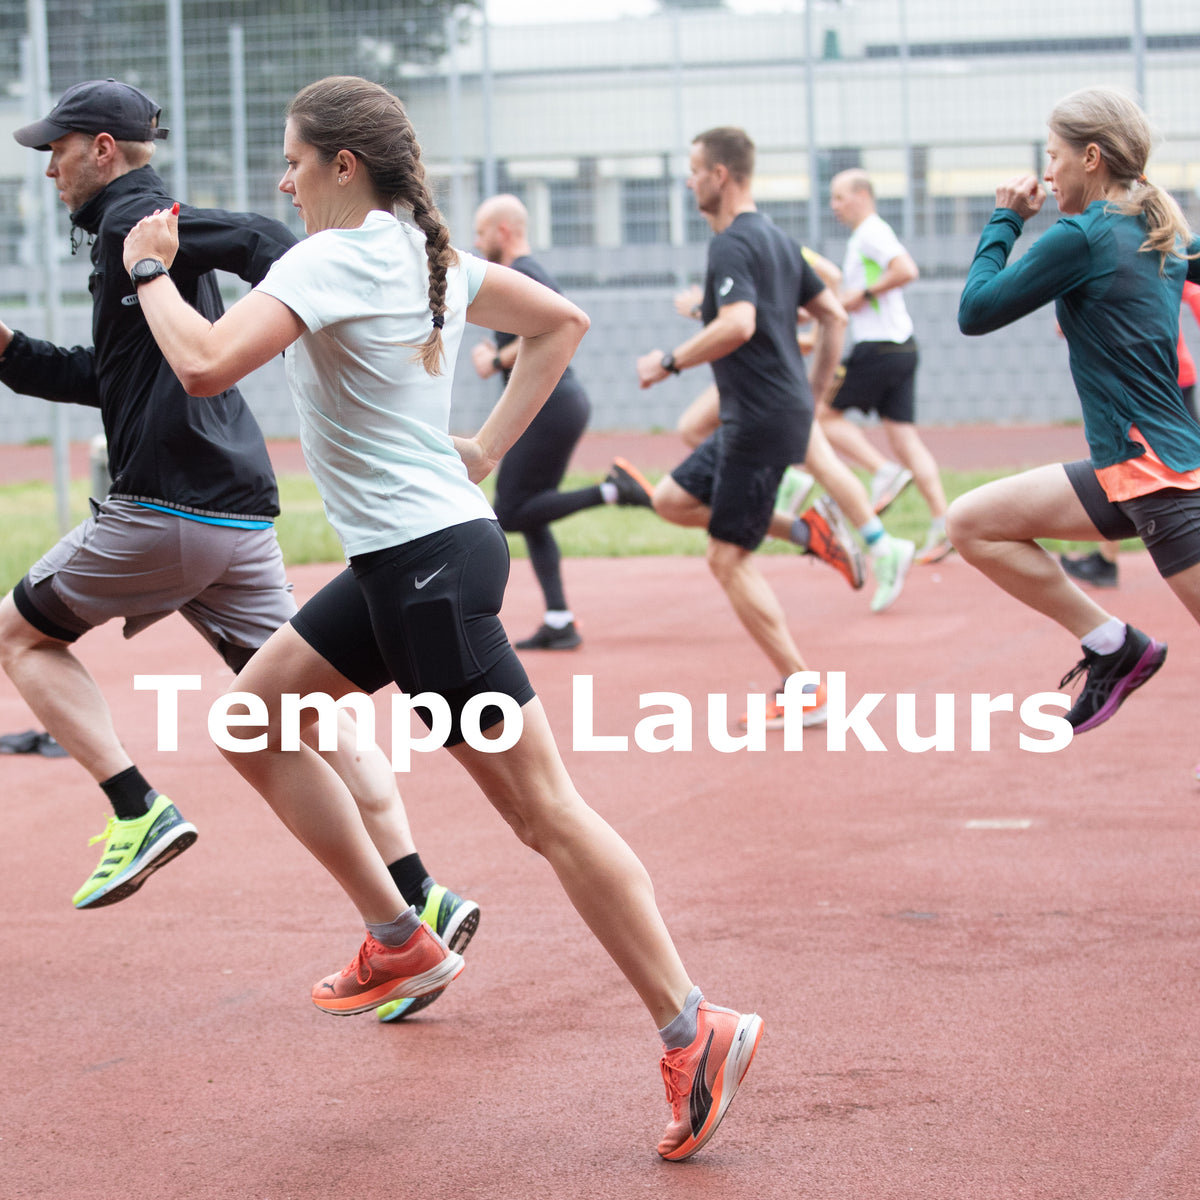 Tempo-Kurs – Tempotraining Laufkurs für alle in Dortmund